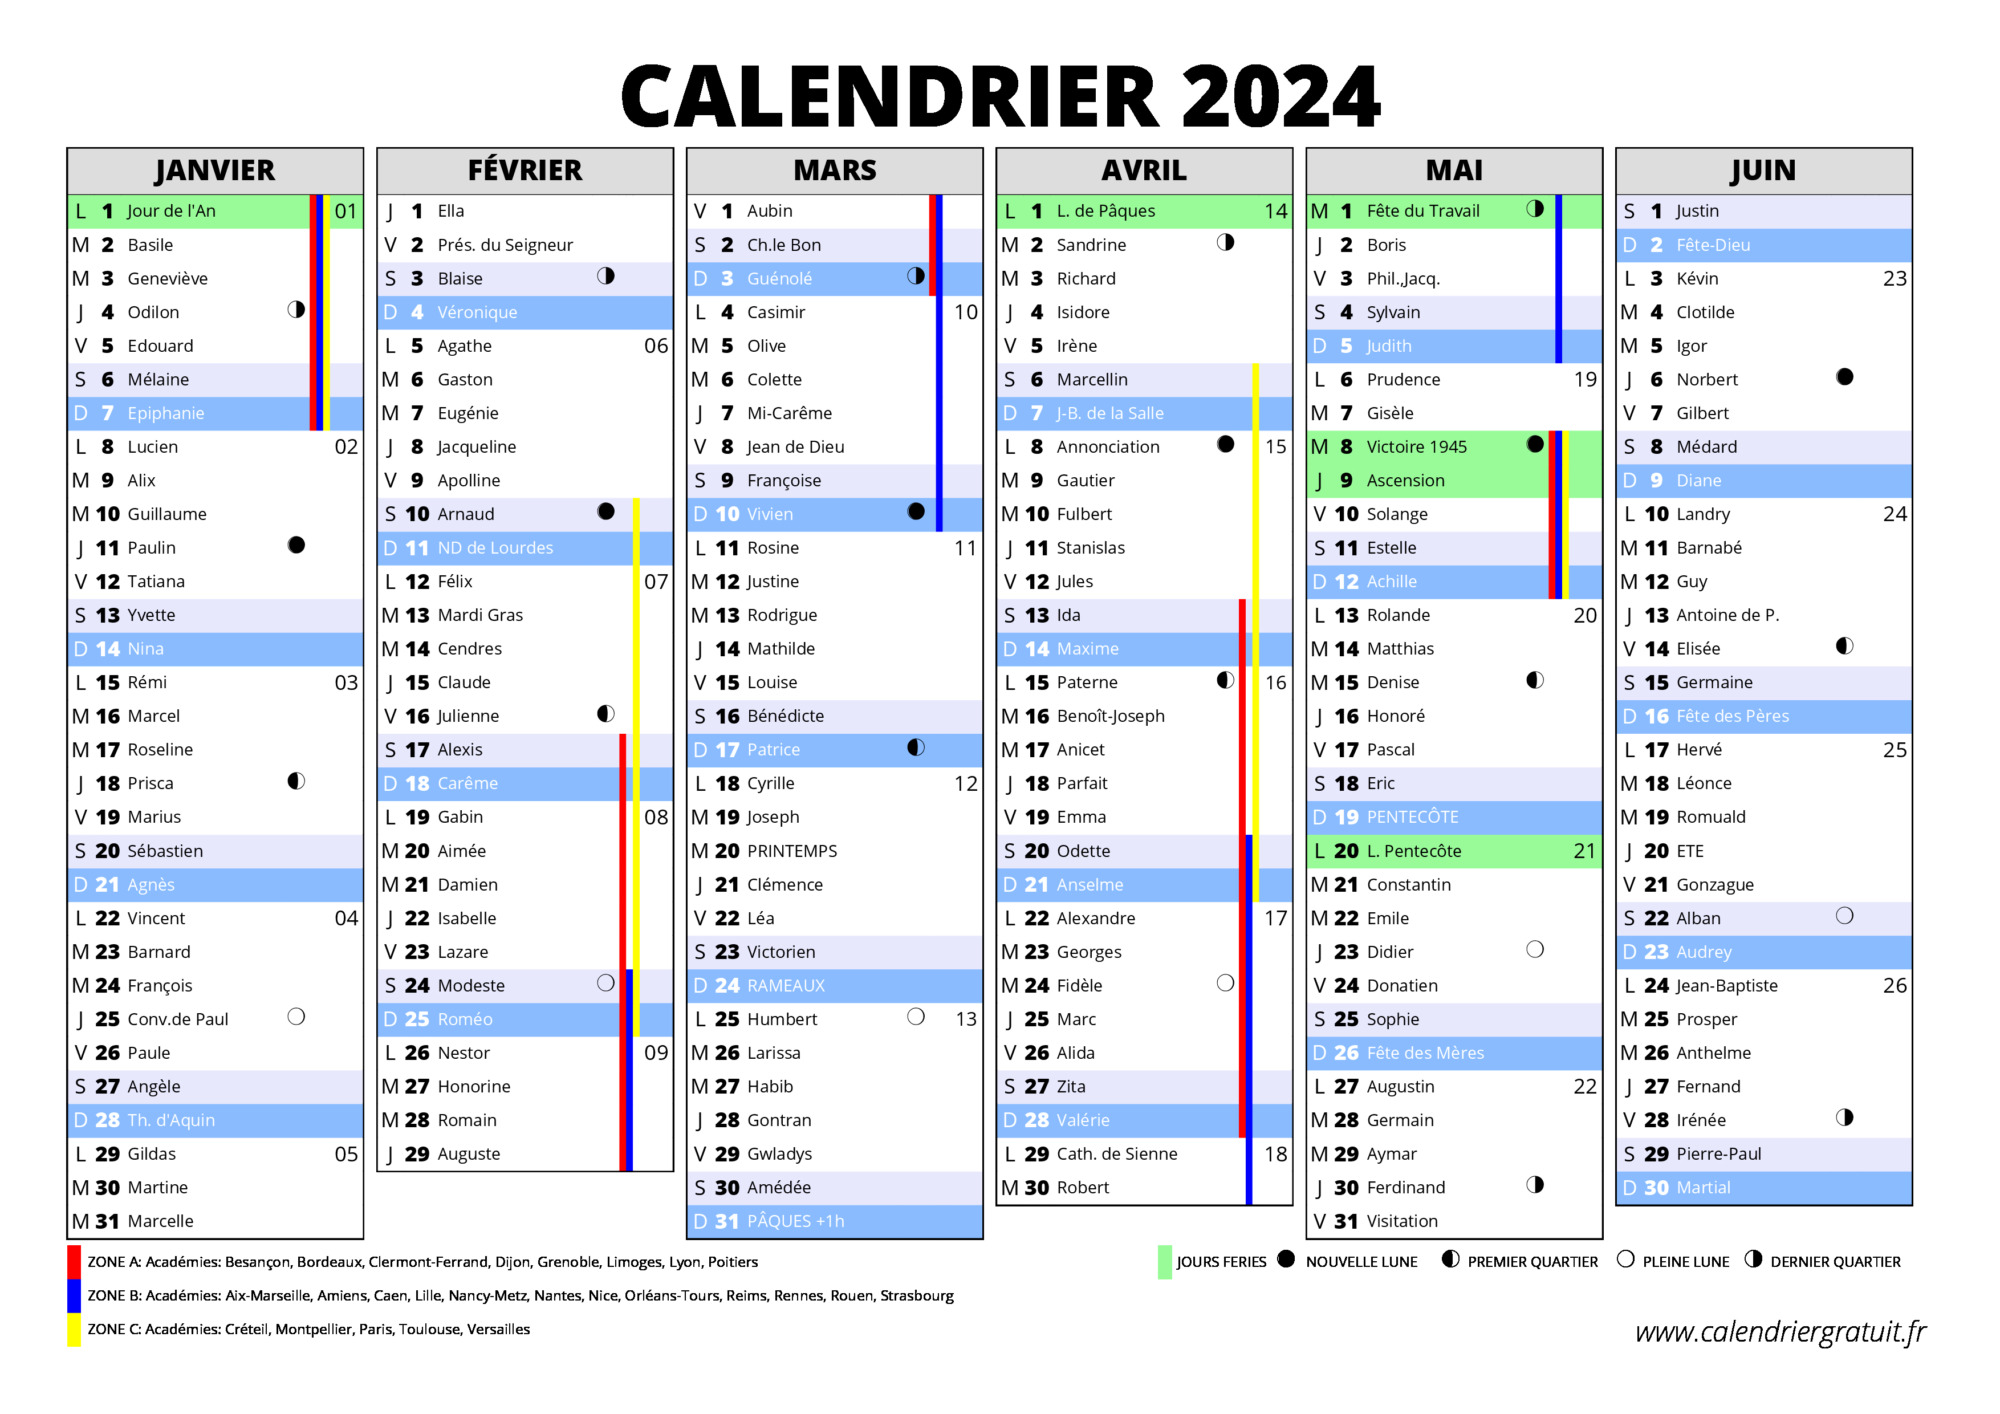 Quel calendrier 2024 choisir ?